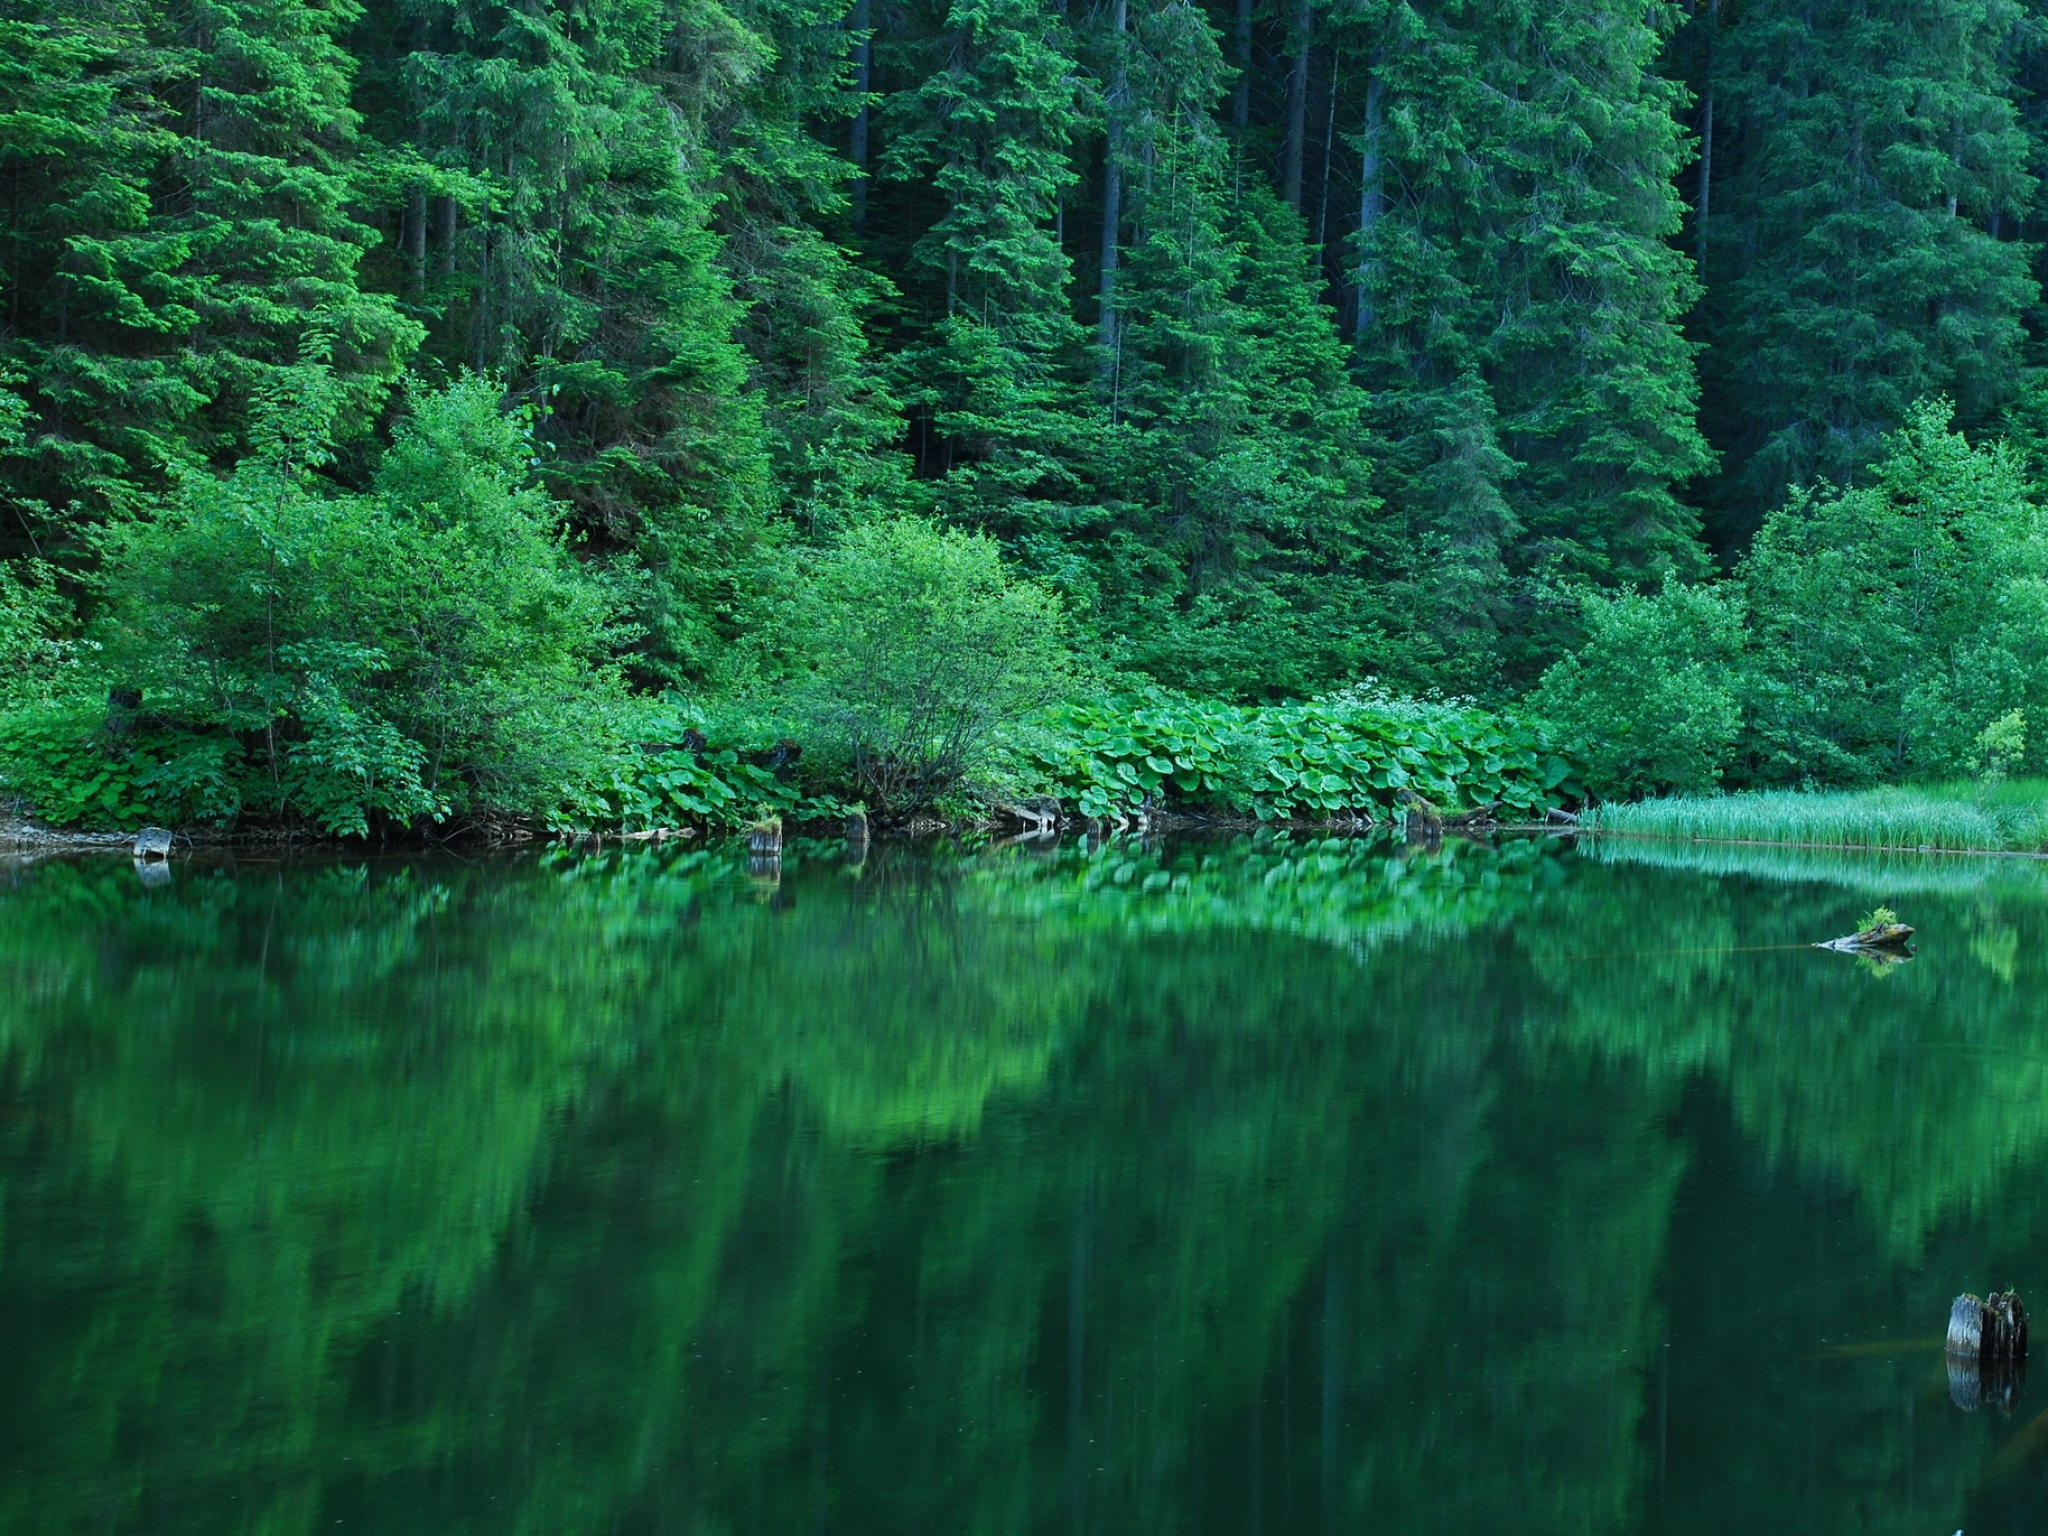 Изумрудная тропа. Изумрудное озеро зеленолес. Озеро Рица. Лесное озеро Залмана Кинга. Изумрудно-зеленые водоемы, Твизель, новая Зеландия.